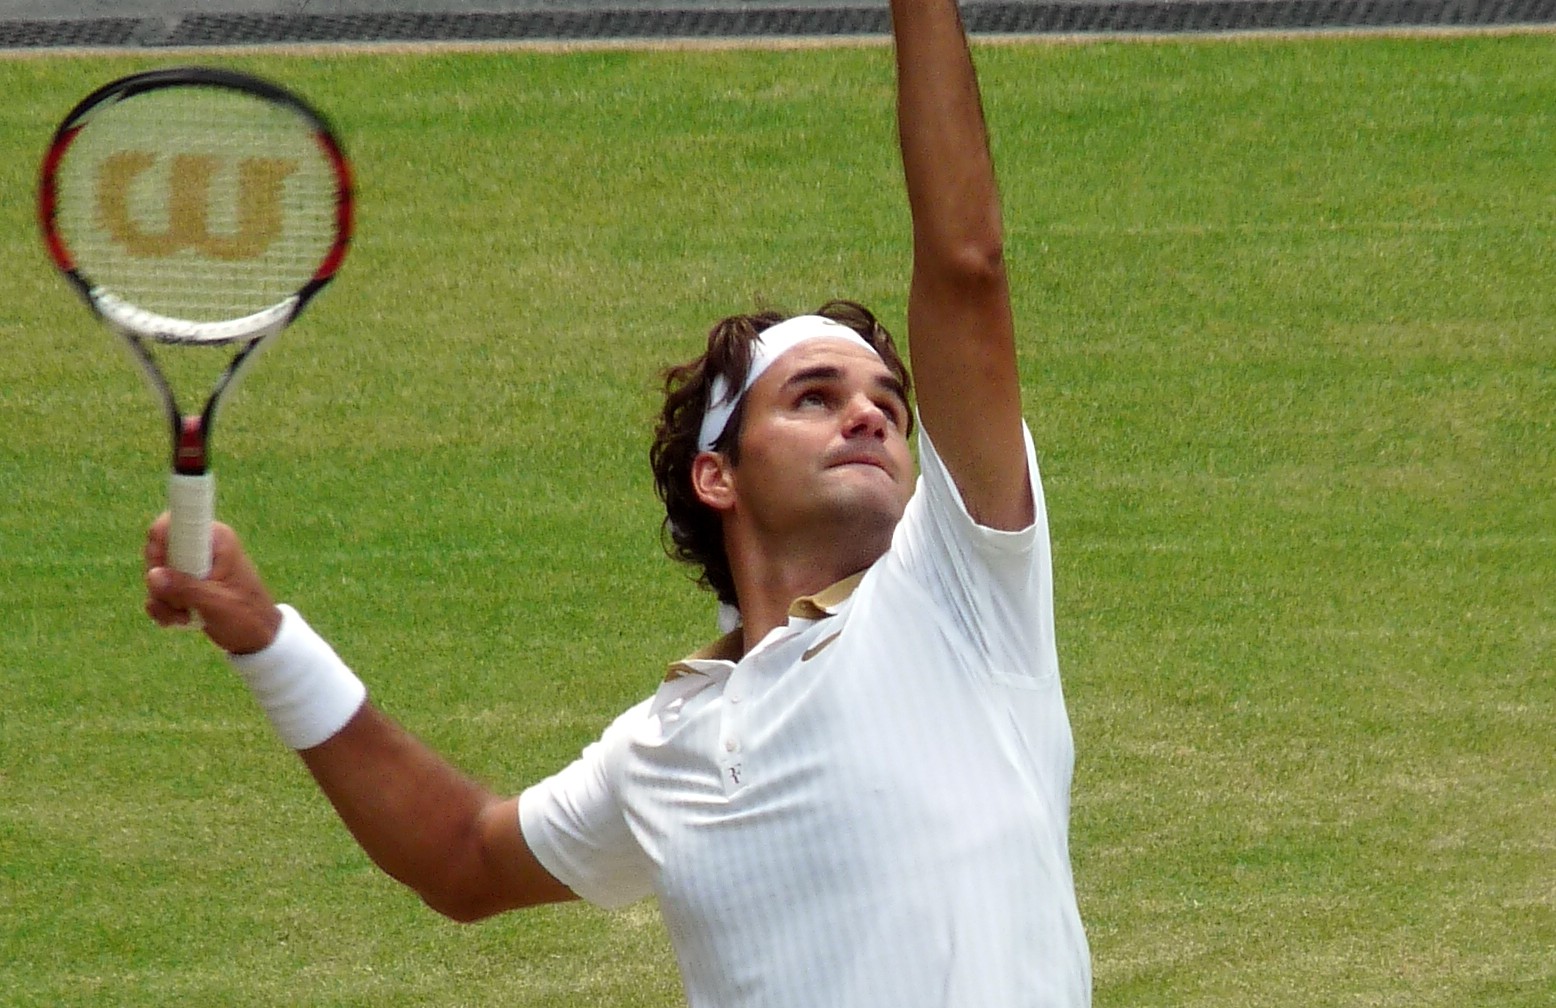 Roger_Federer_(26_June_2009,_Wimbledon)_2_(crop-2)